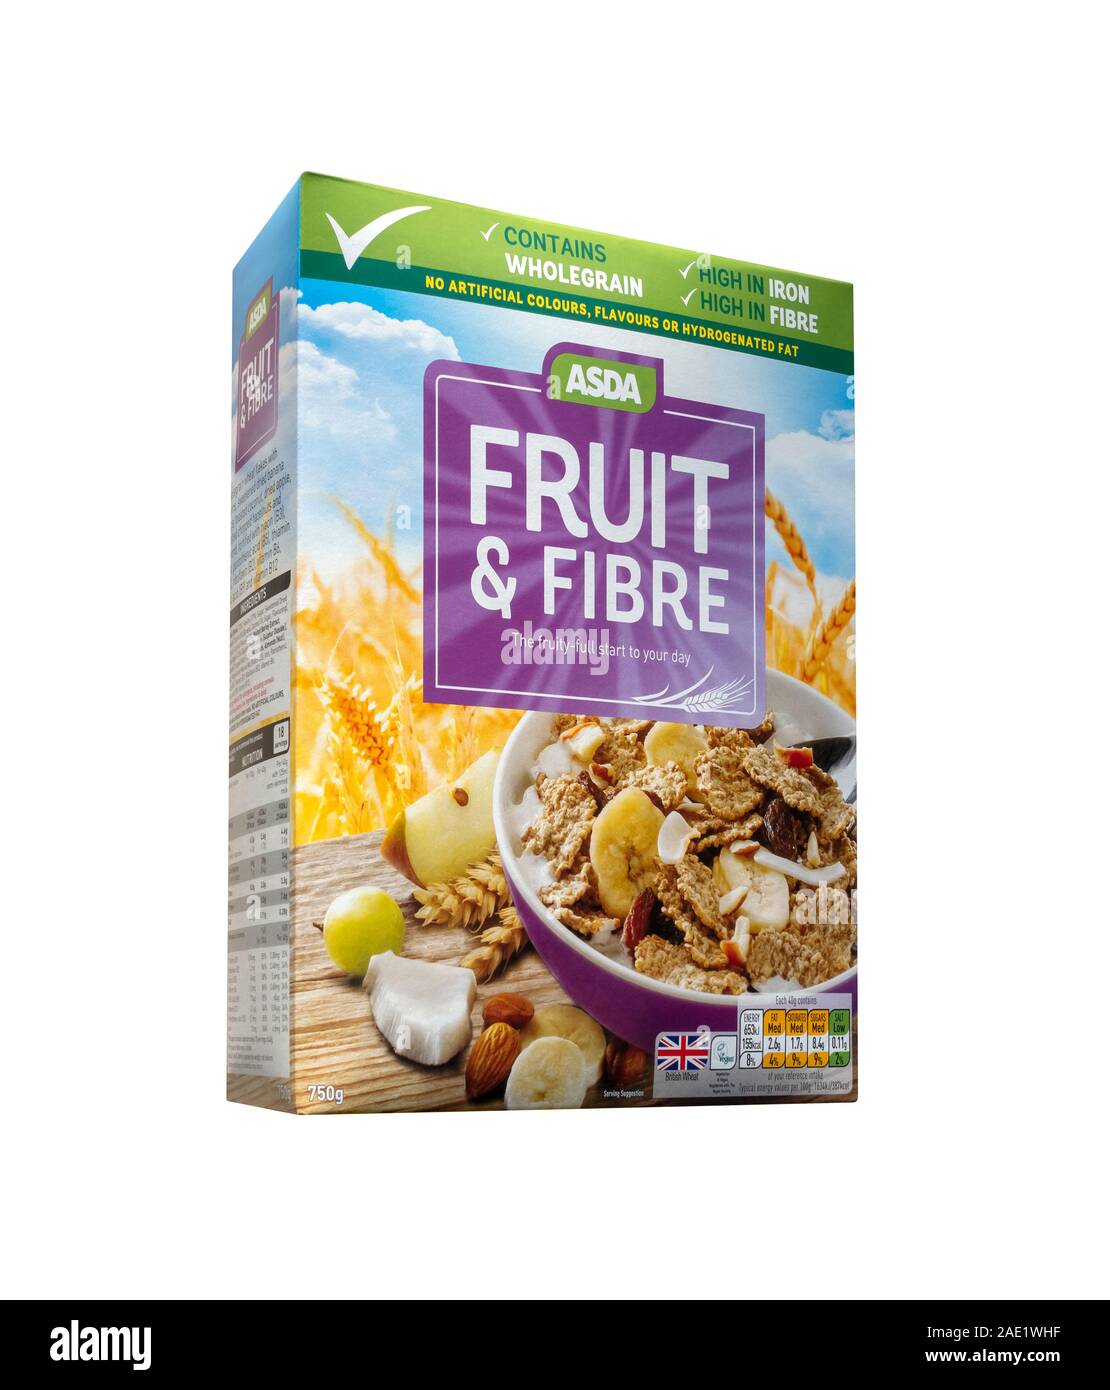 Supermercado Asda propia marca de cereales, fruta y fibra, desayuno, caja de cereales, recorte de paquetes, fondo blanco Foto de stock